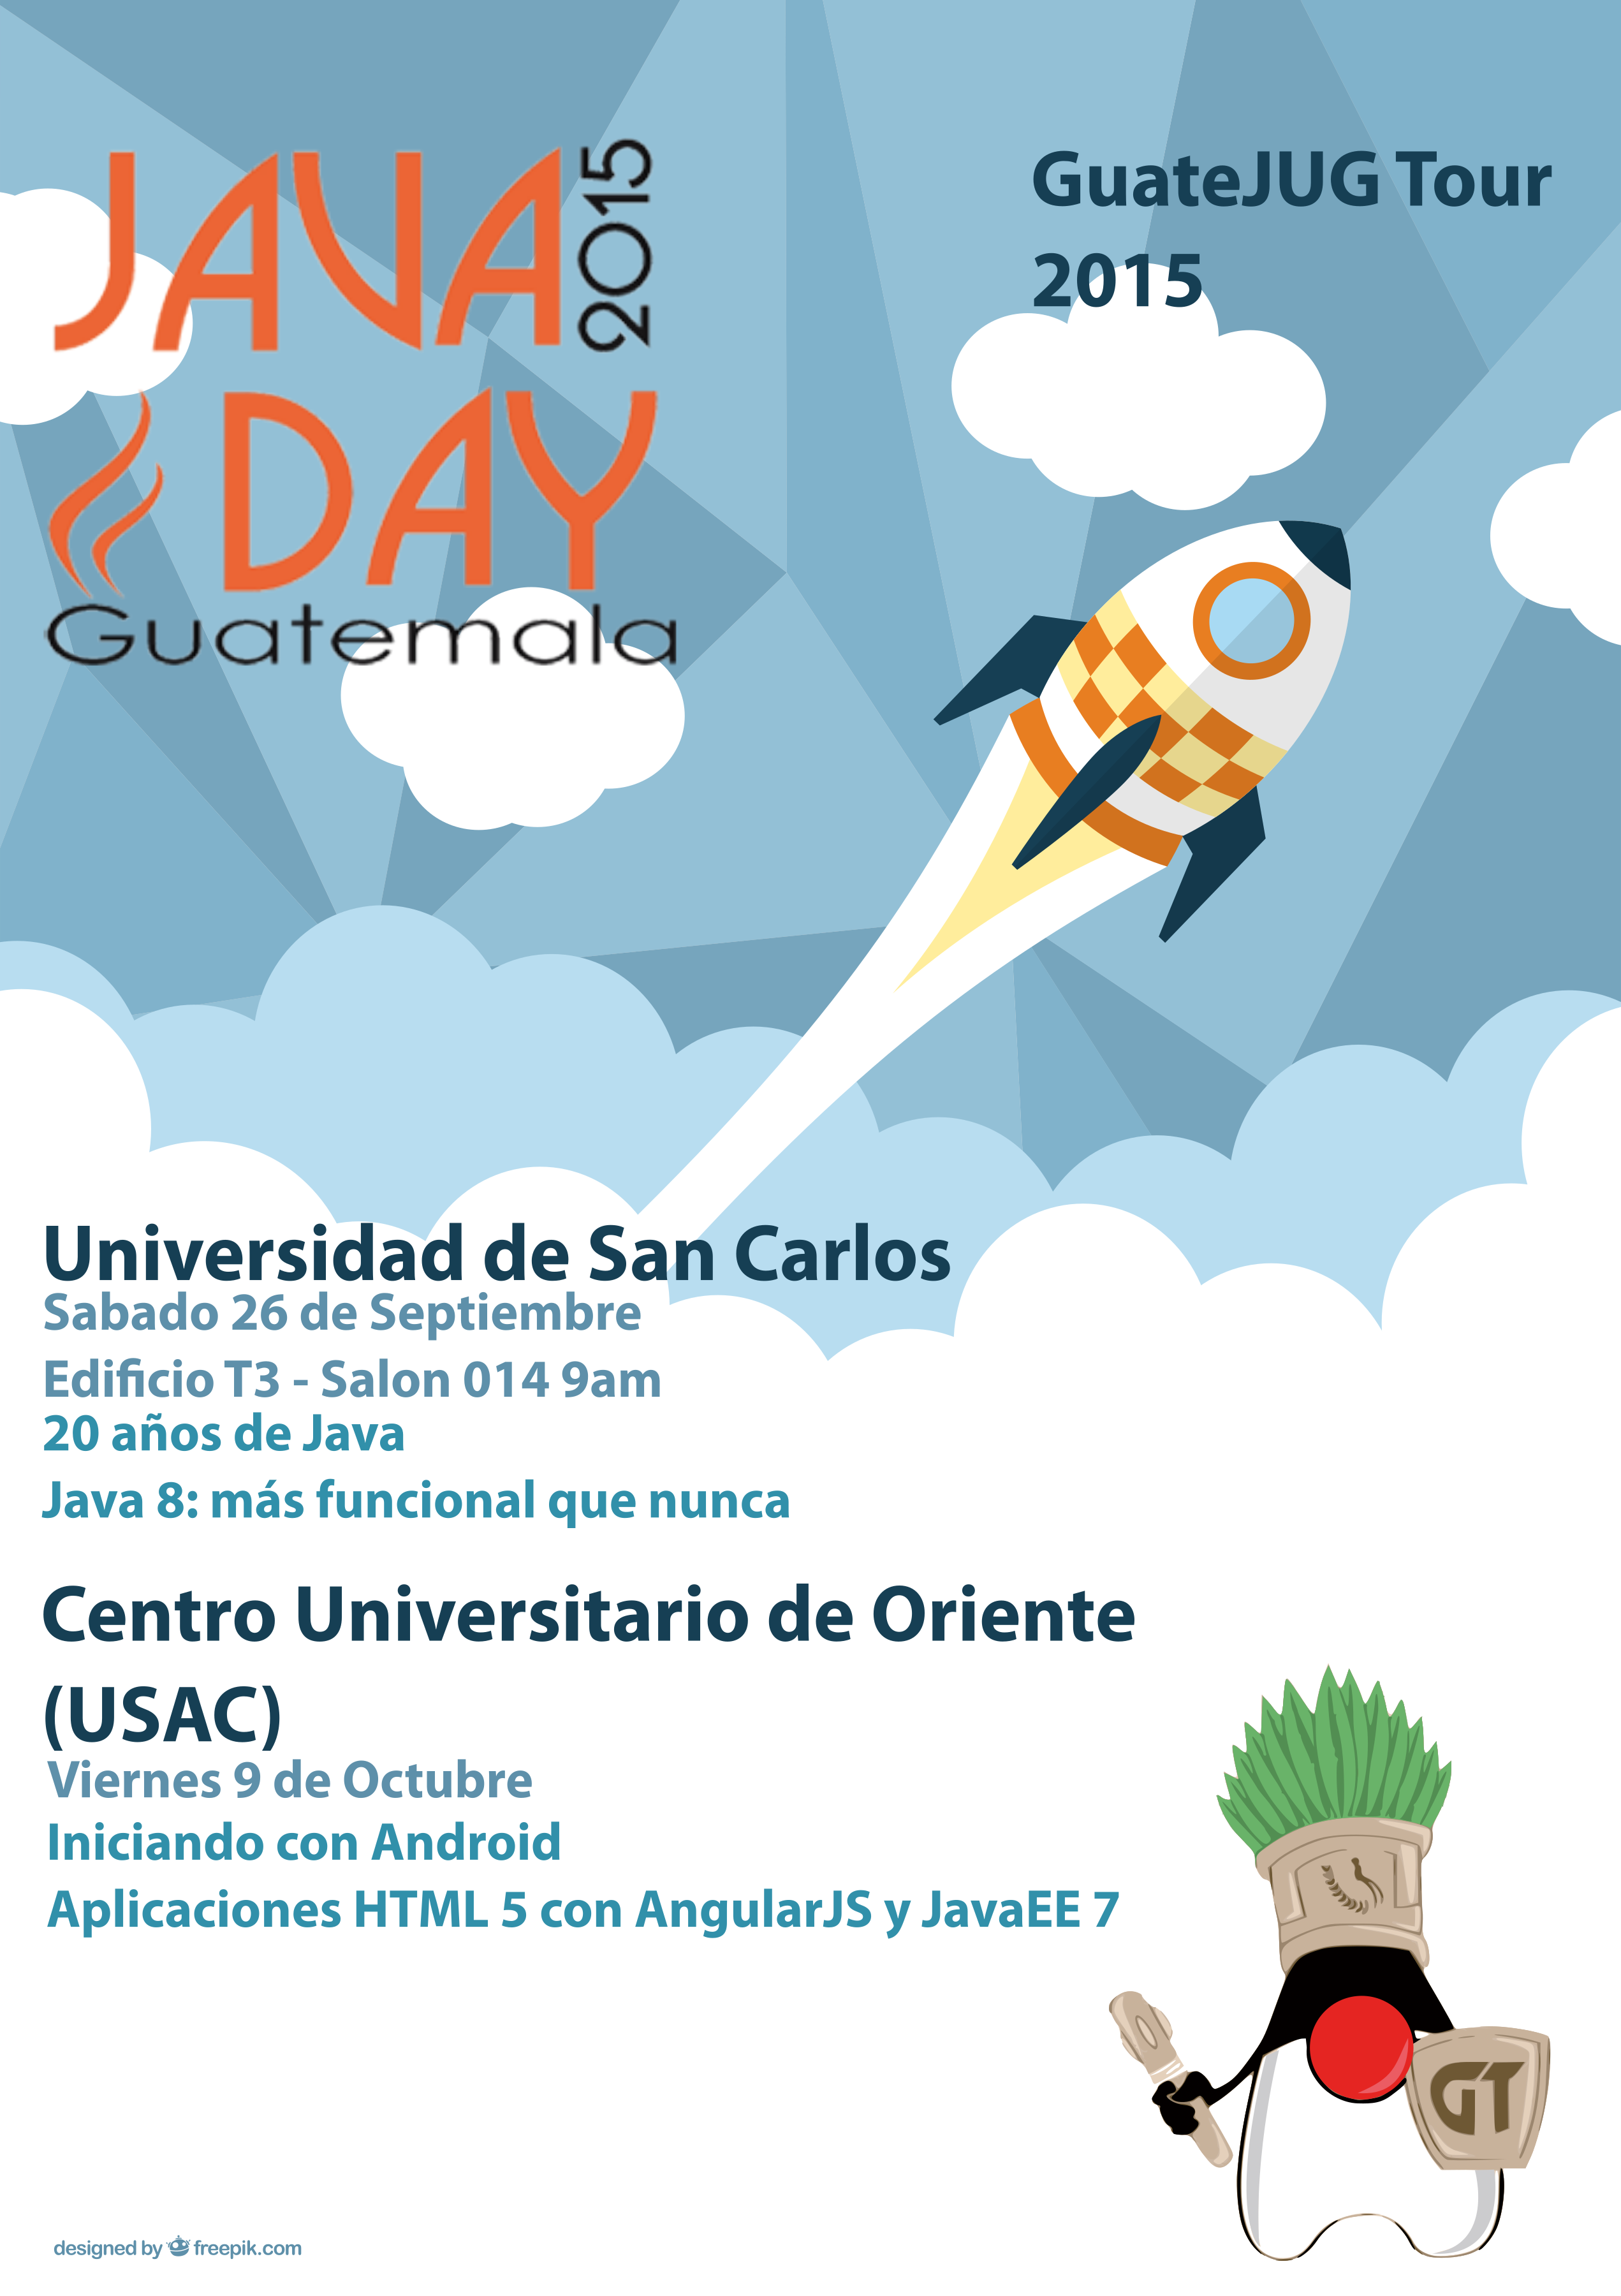 GuateJUG Tour